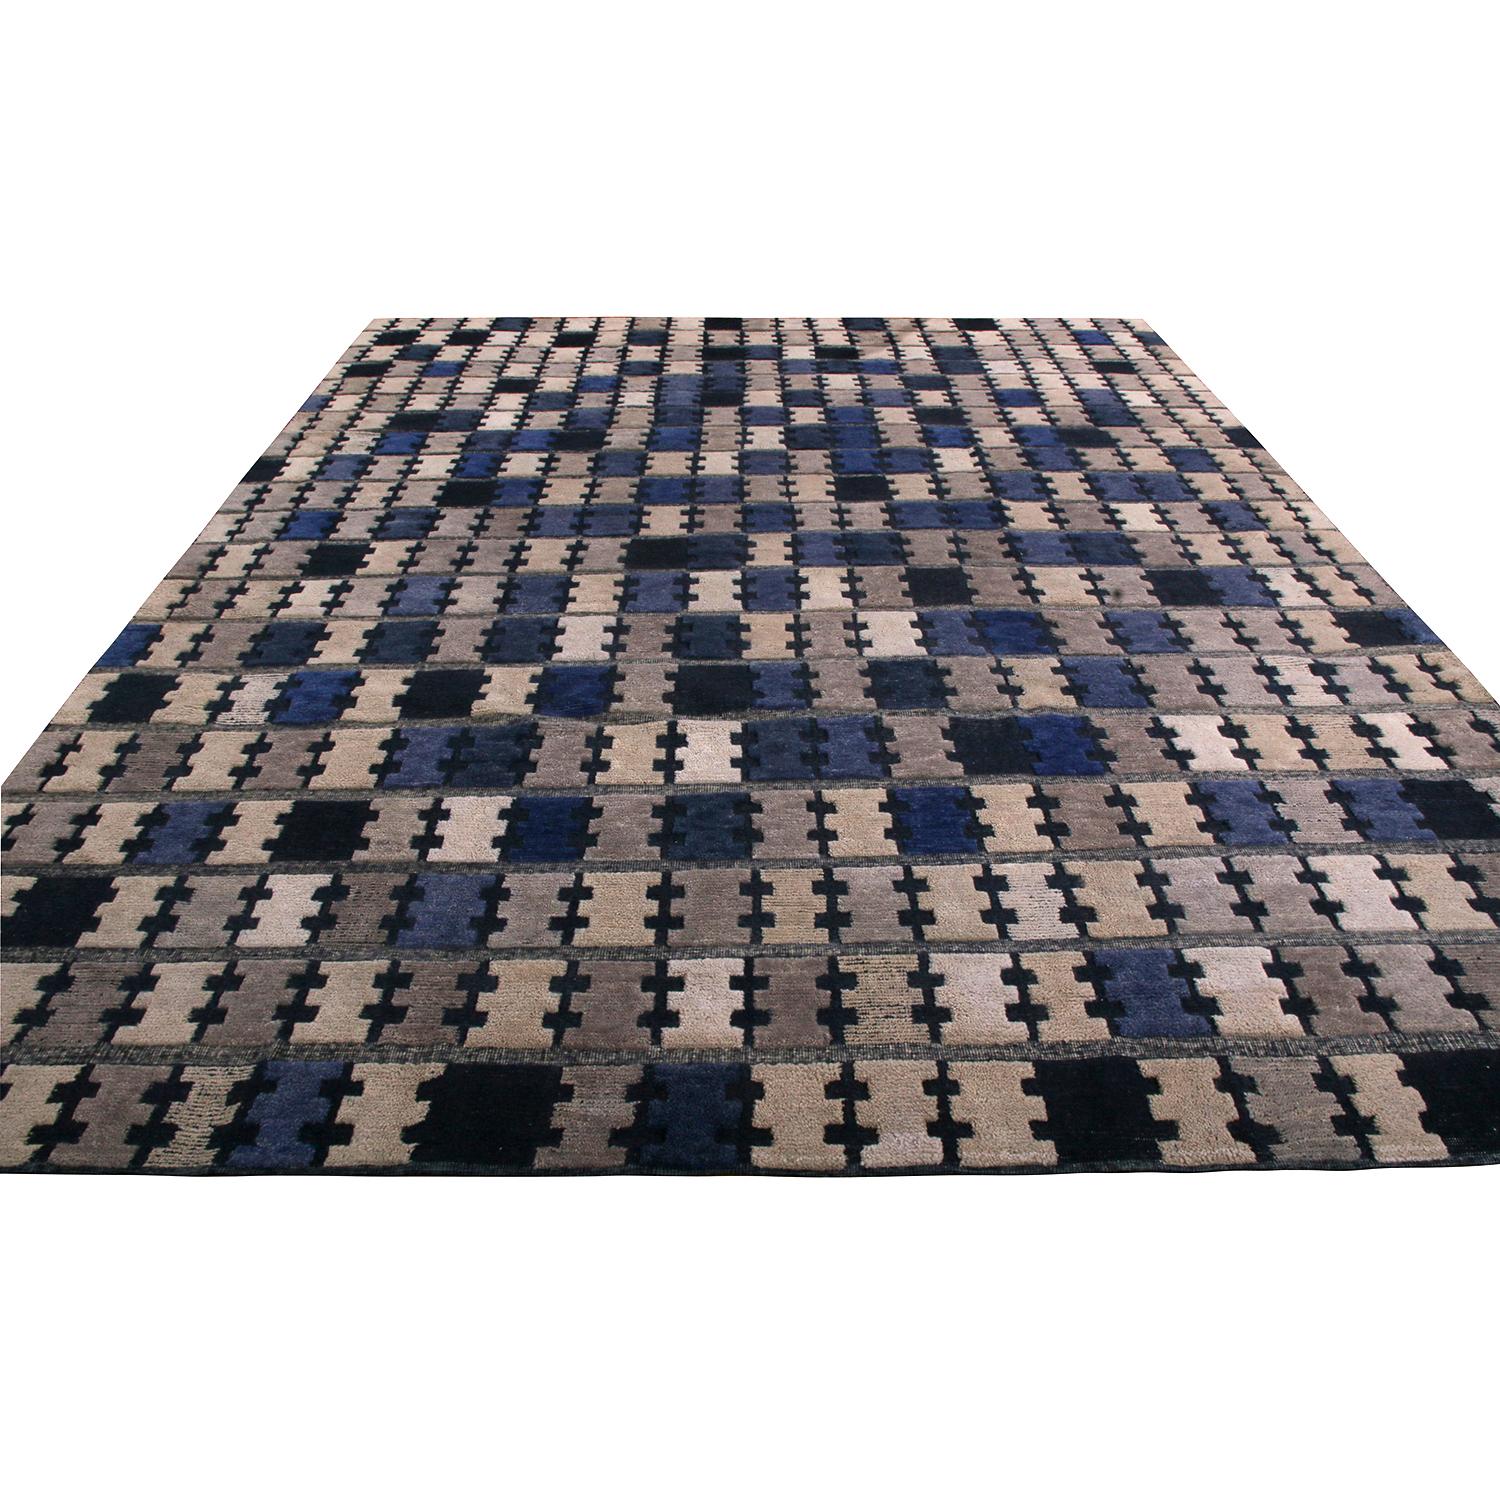 Dieser moderne Teppich im Format 9 x 12, handgeknüpft aus weicher, einladender Wolle, gehört zu den jüngsten Ergänzungen der Scandinavian Collection'S von Rug & Kilim, einer Feier der schwedischen Moderne mit neuen großformatigen Geometrien und